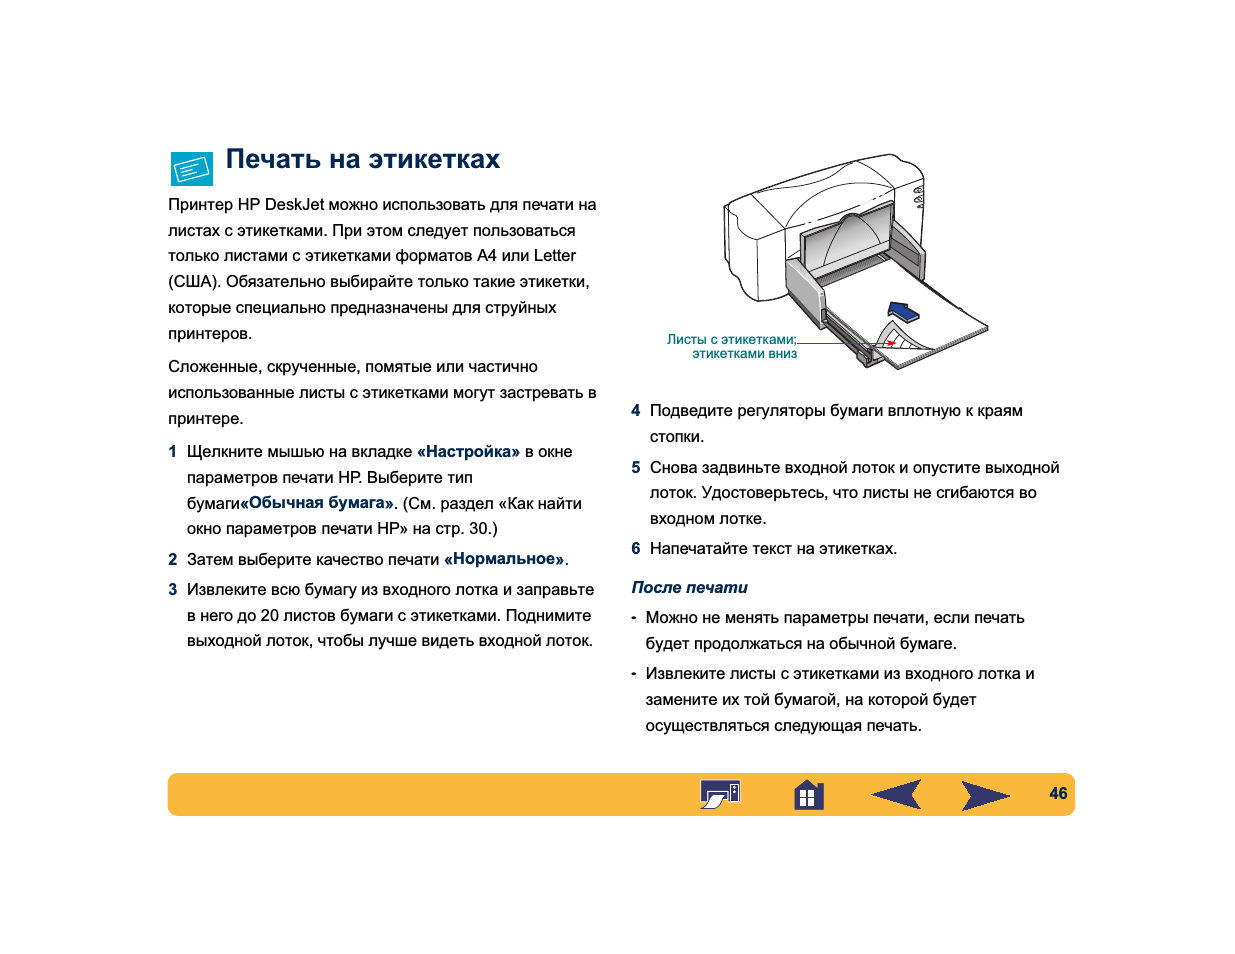 Как сделать ксерокопию на принтере: инструкция, рекомендации